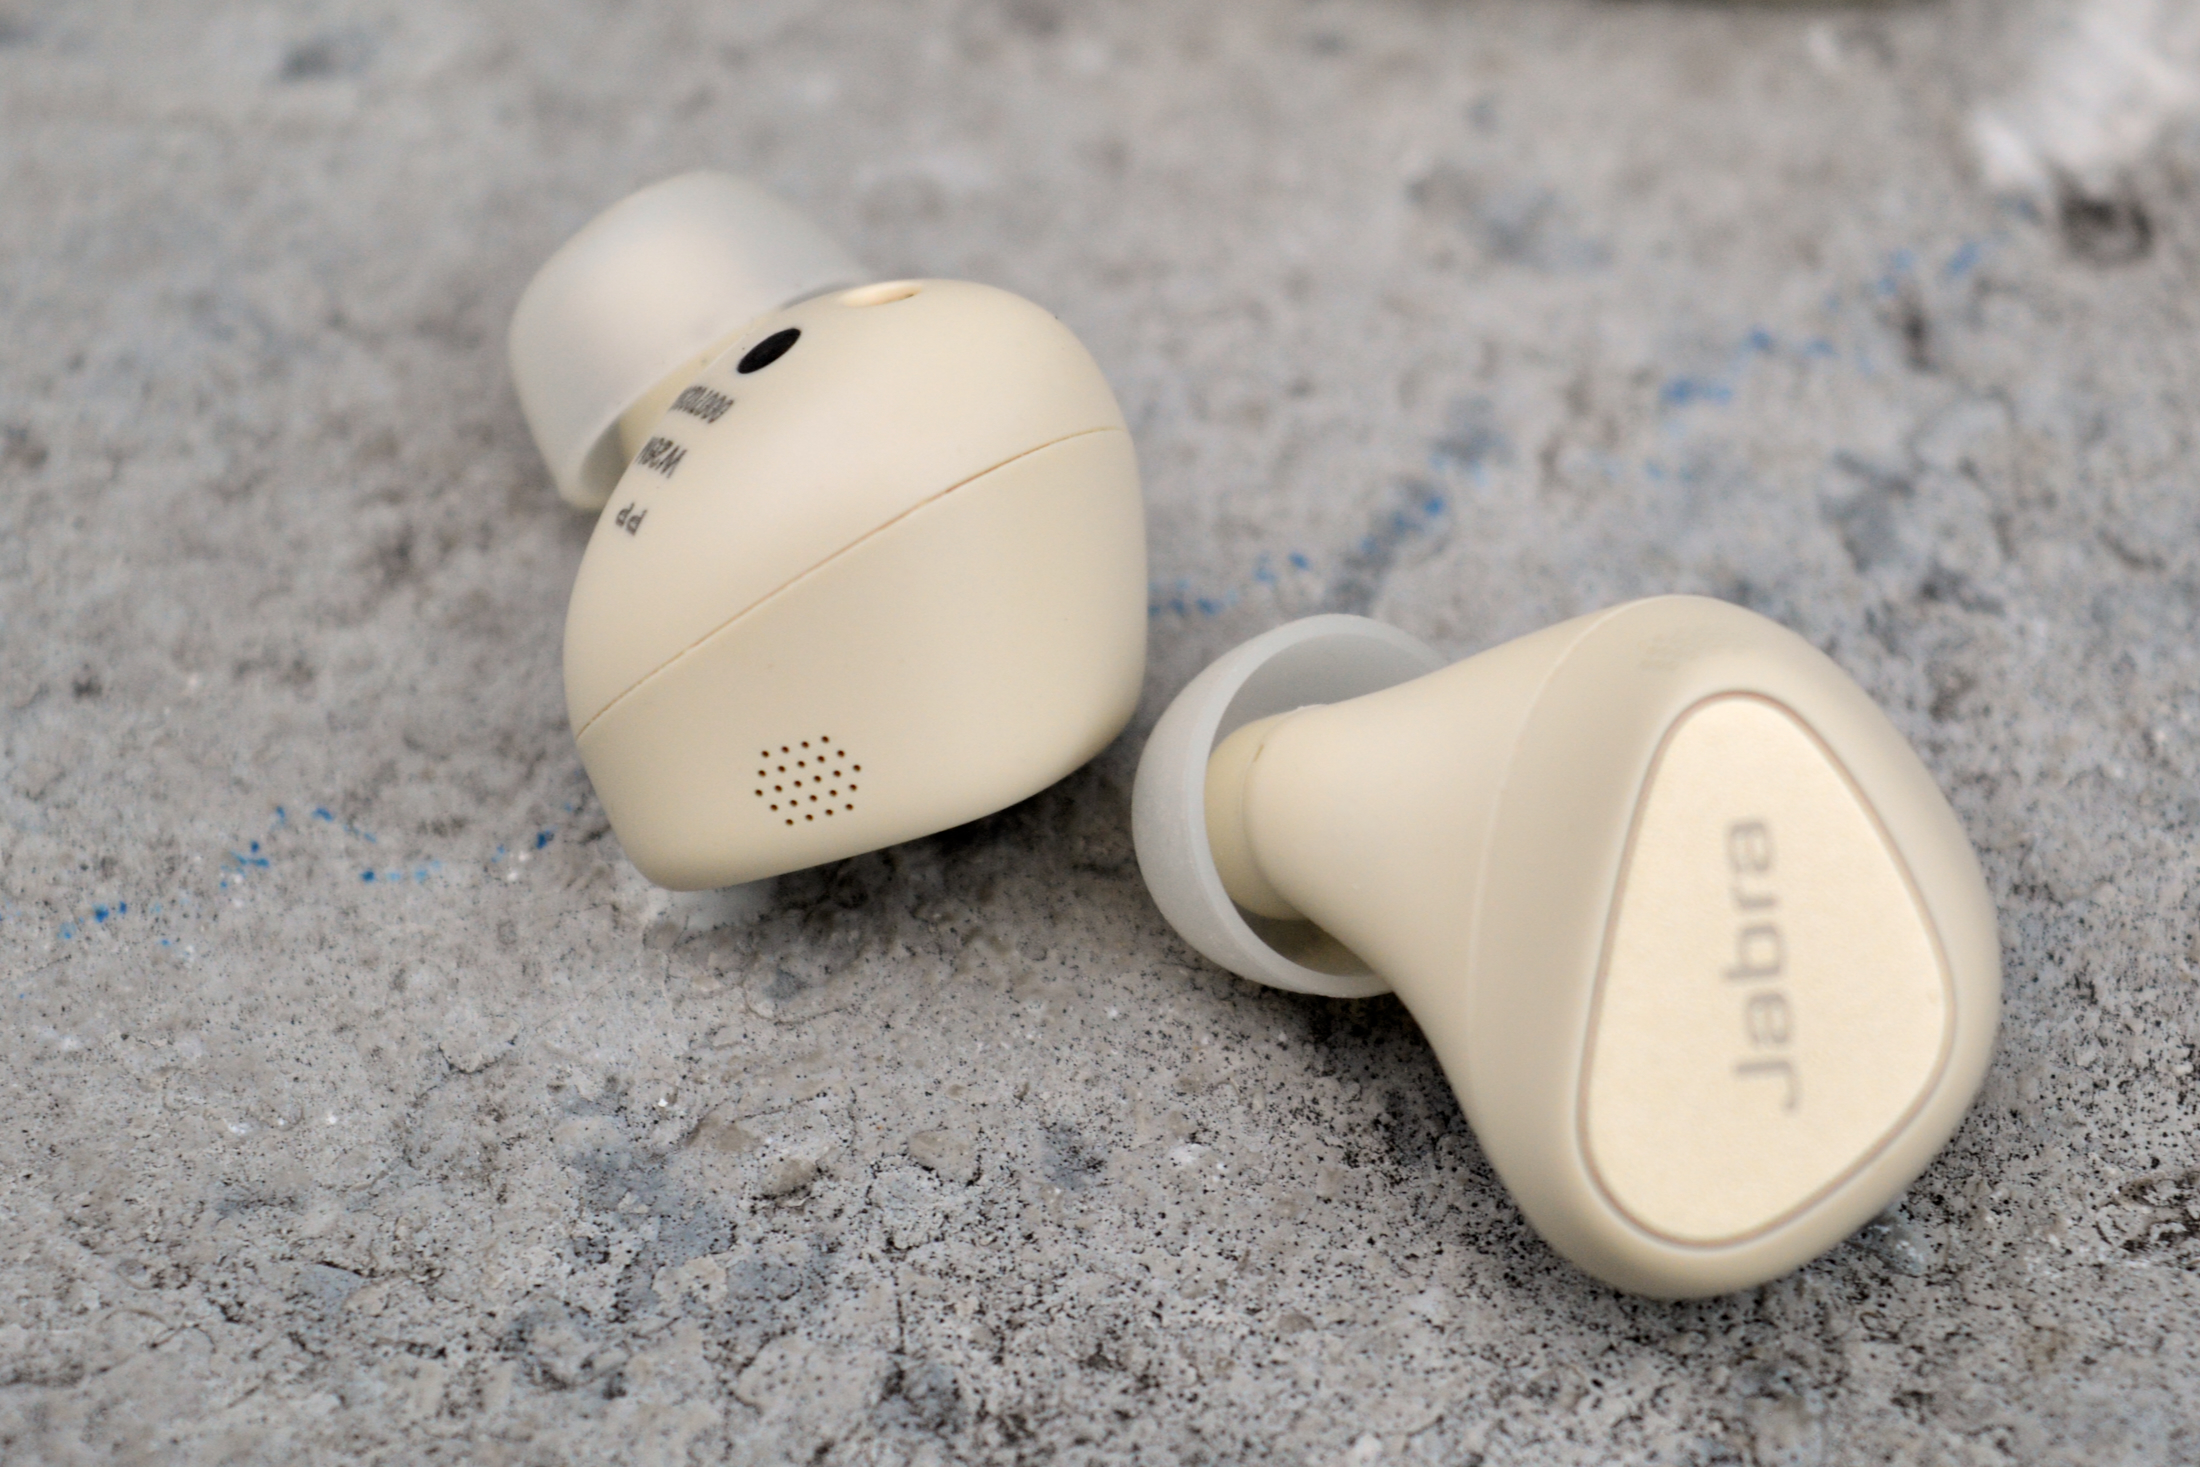  Jabra Elite 5 True Wireless in-Ear Bluetooth Earbuds